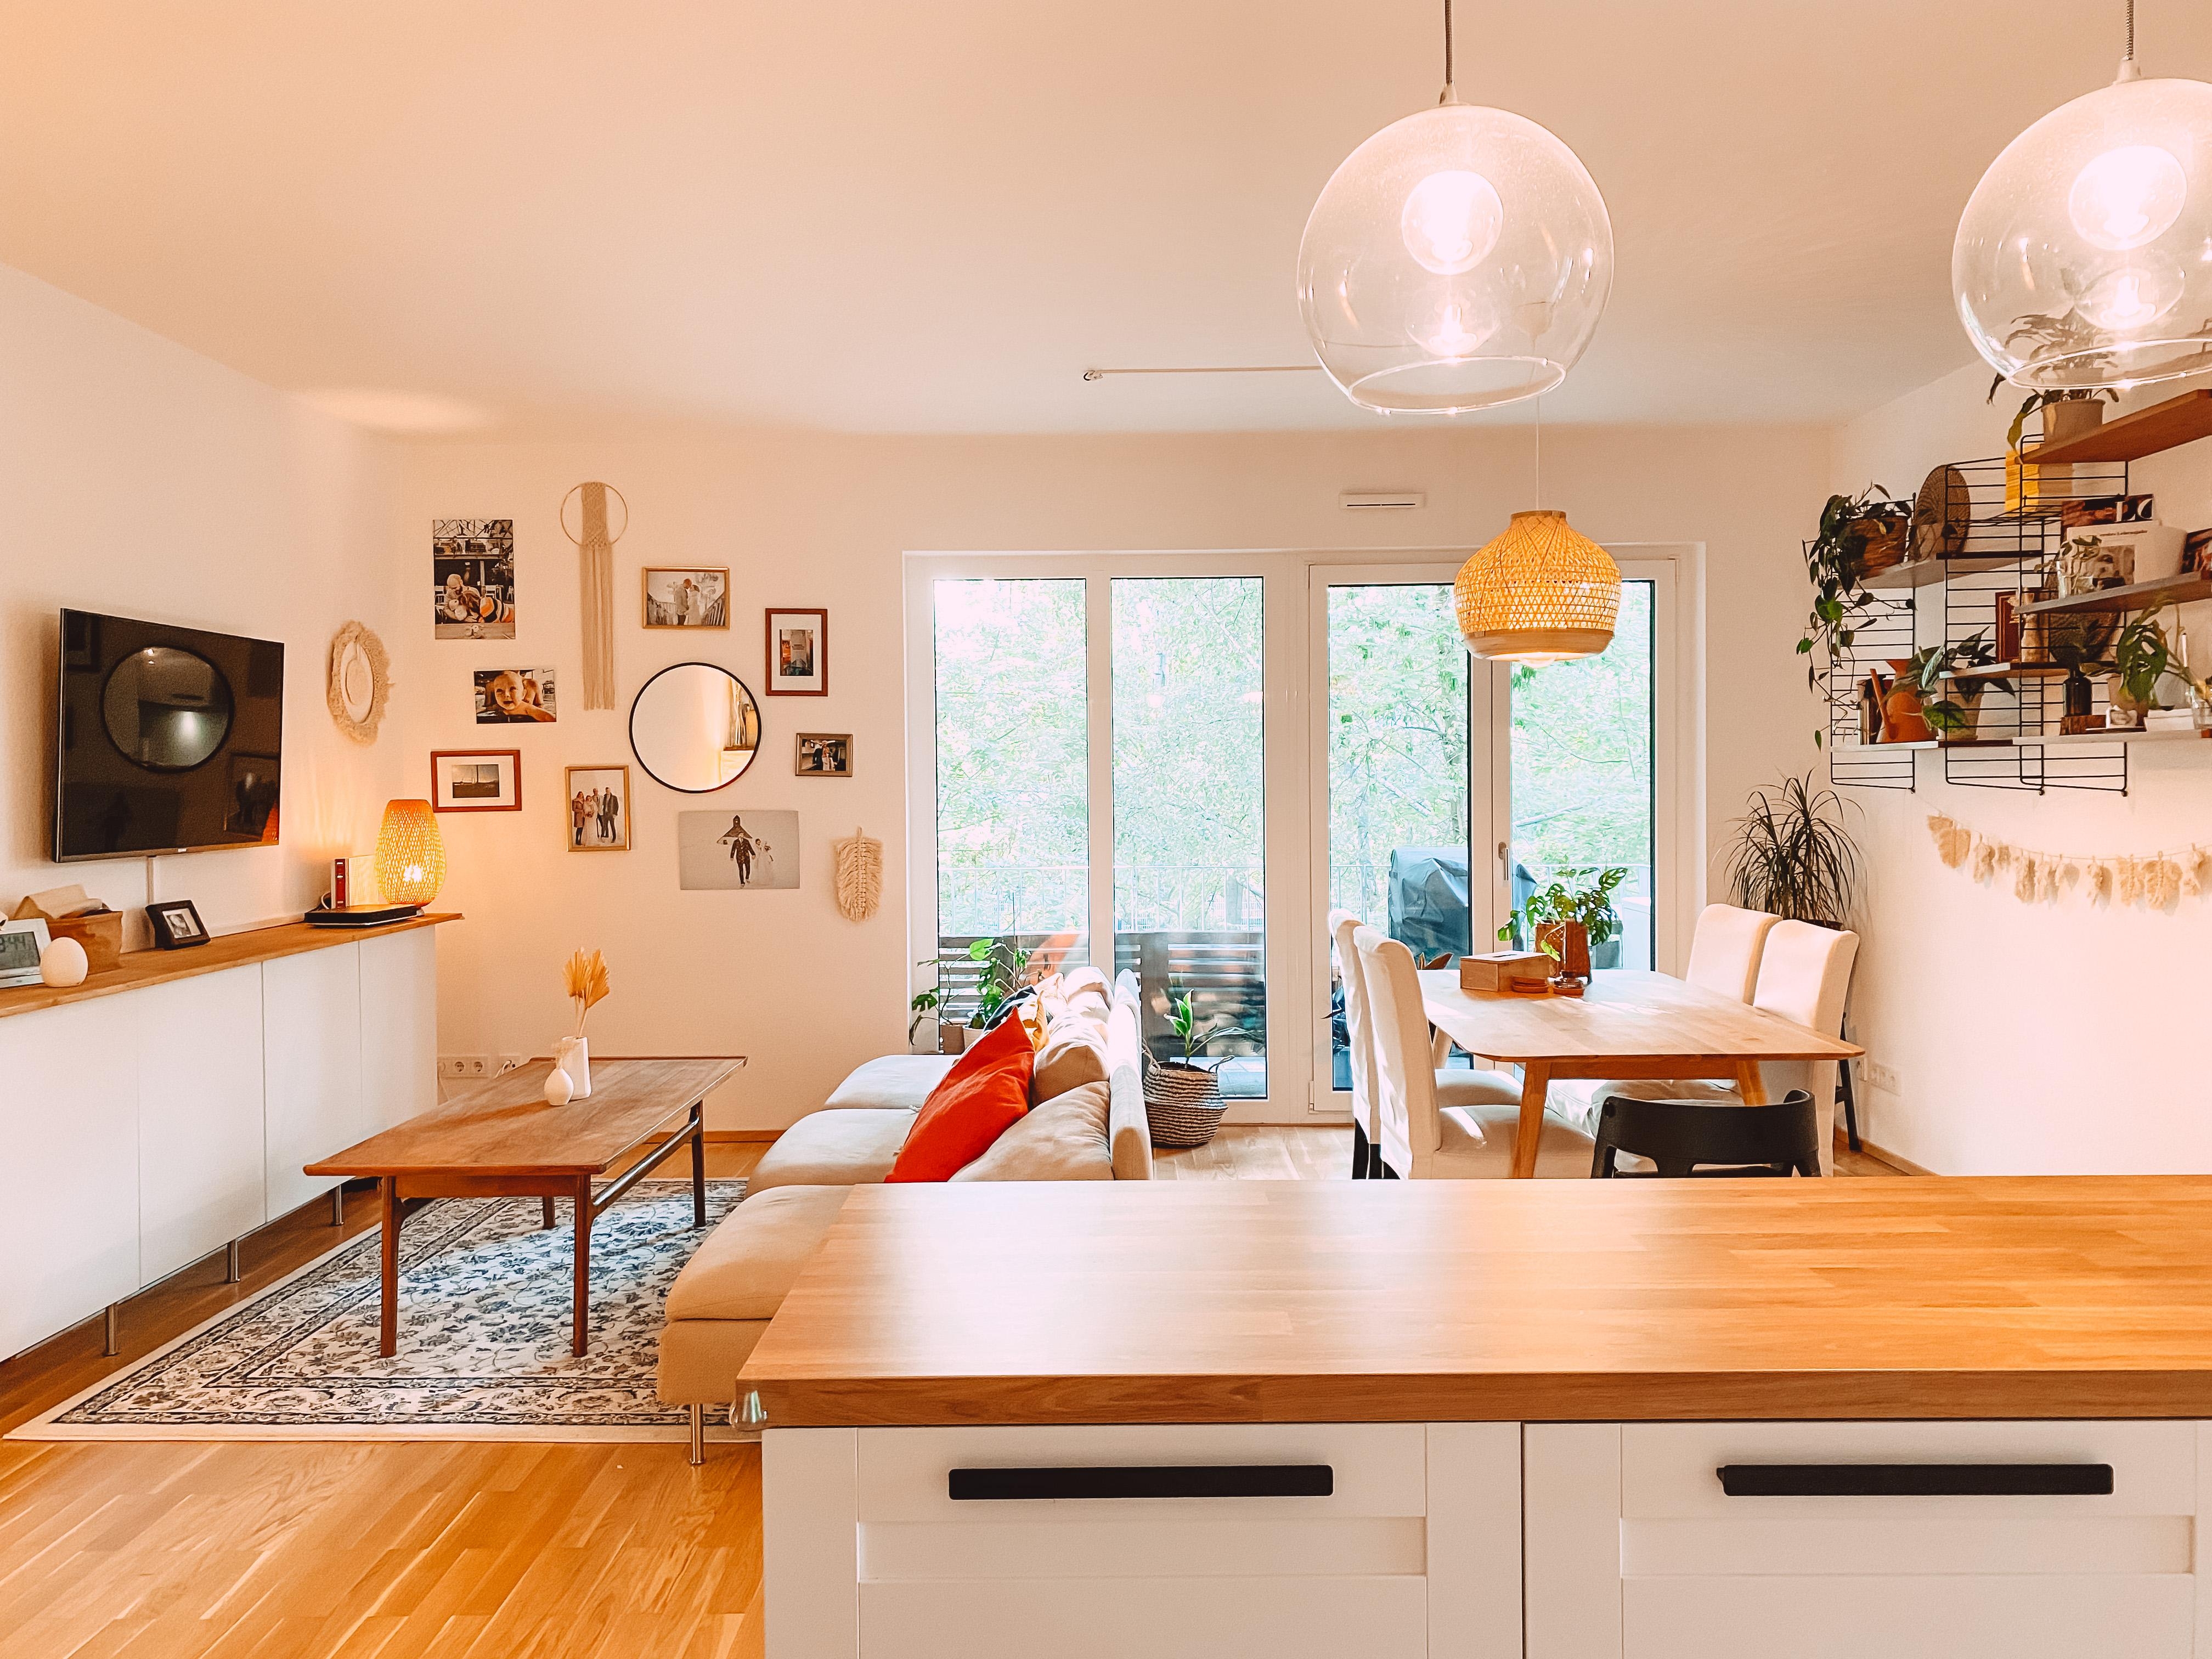 Seid ihr eher Typ Wohnküche oder getrennte Küche? #wohnküche #wohnzimmer